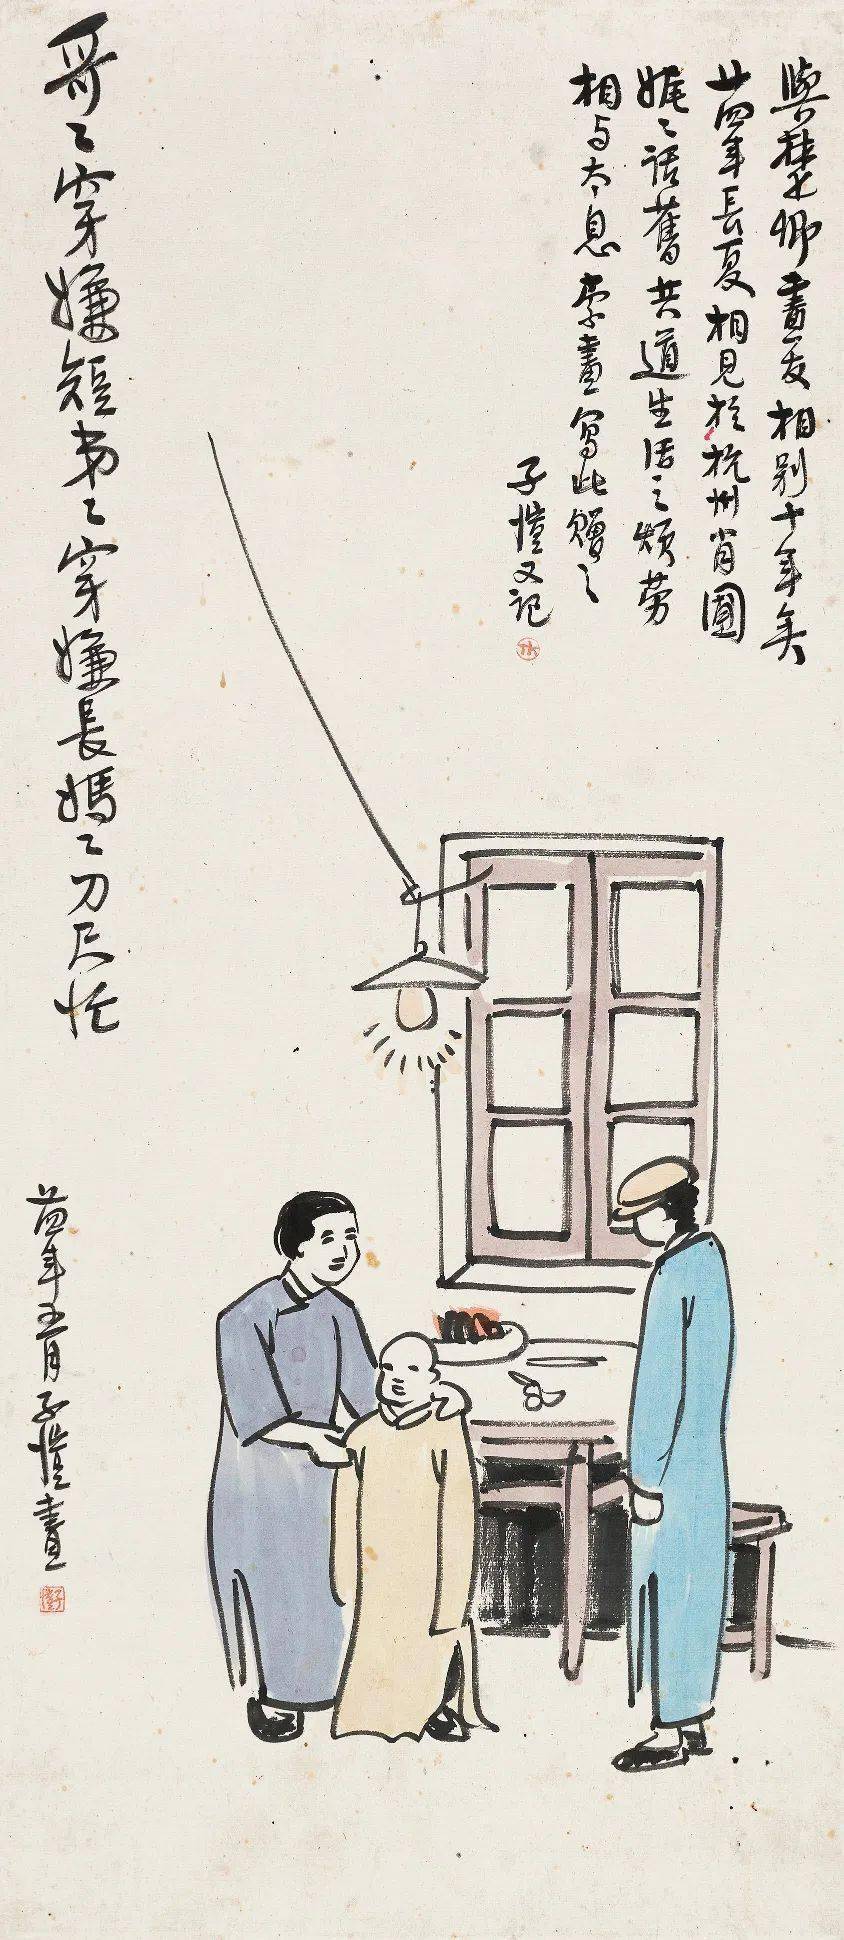 现代漫画鼻祖,最艺术的艺术家——丰子恺